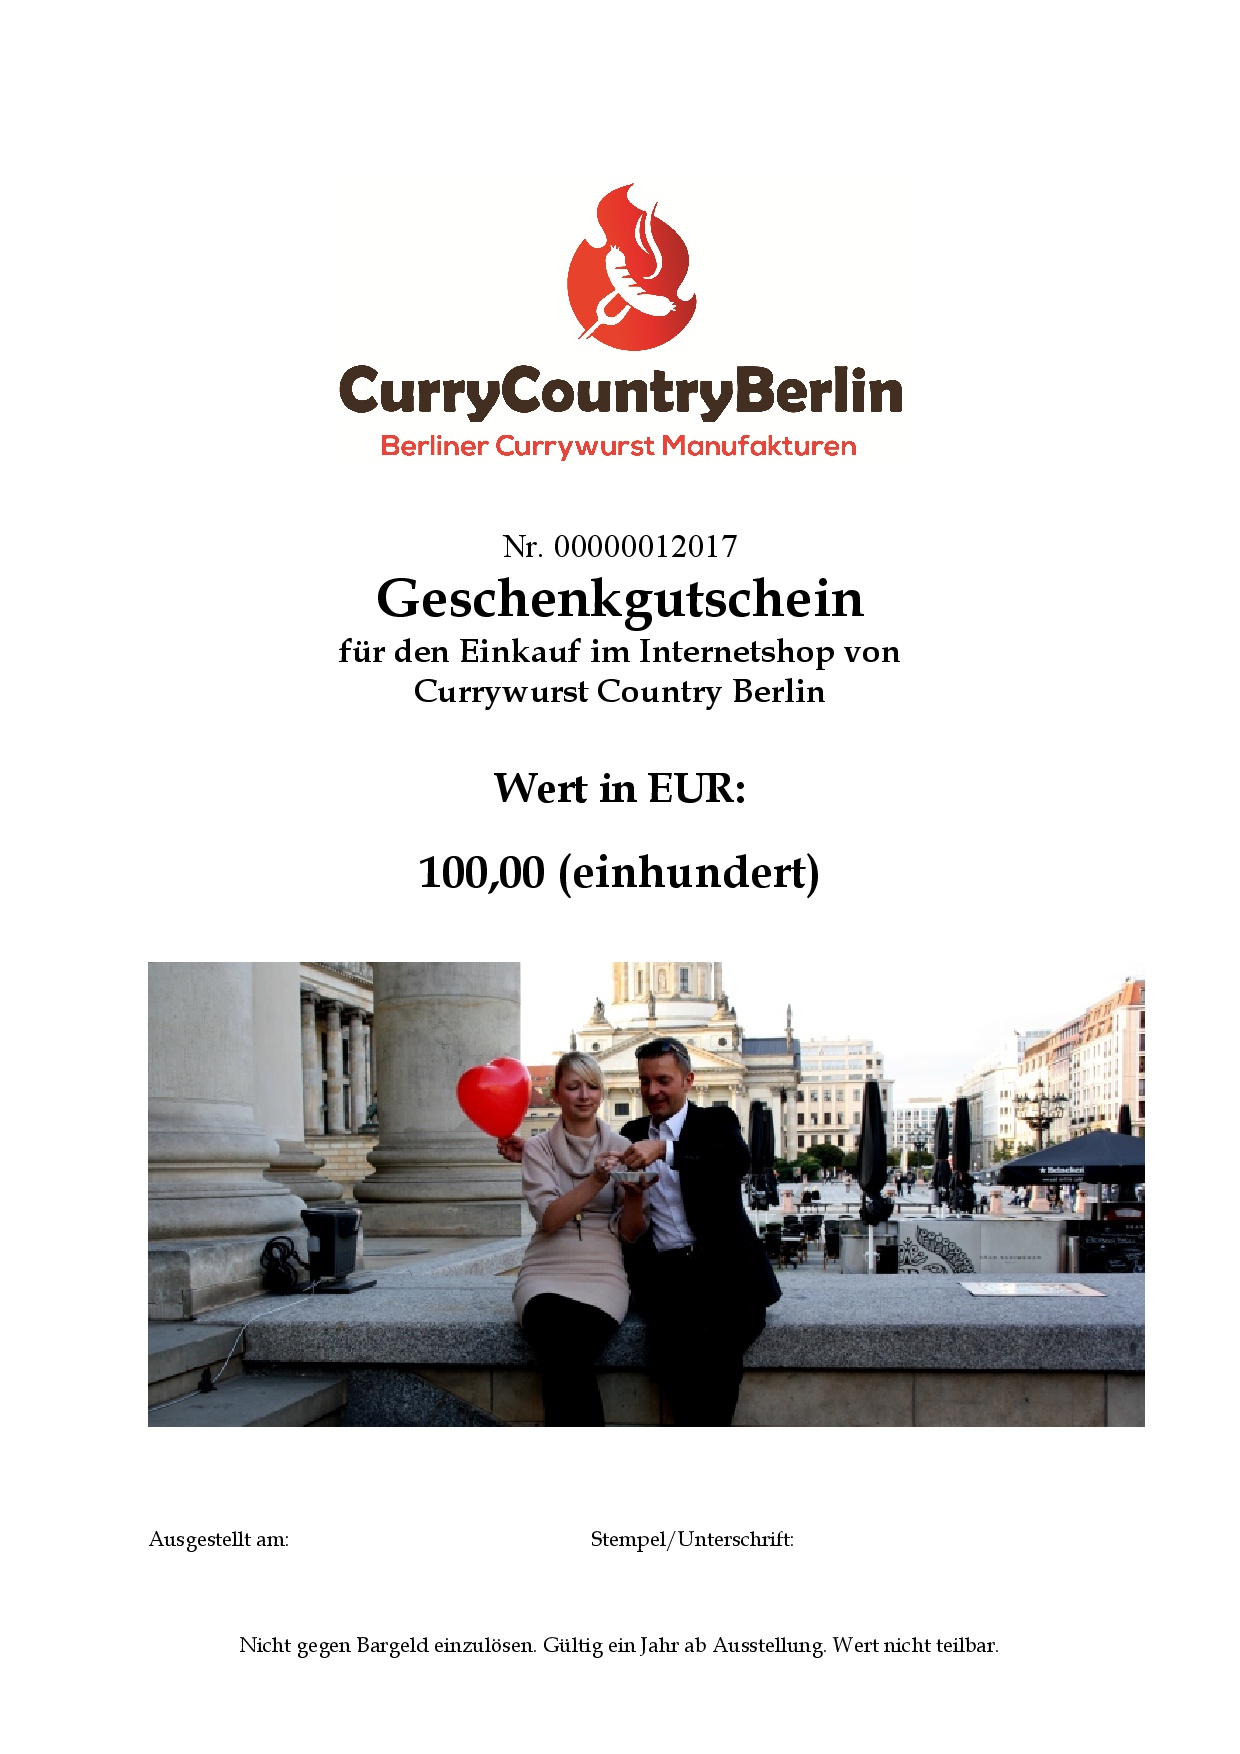 Curry Gutschein -100 EUR-